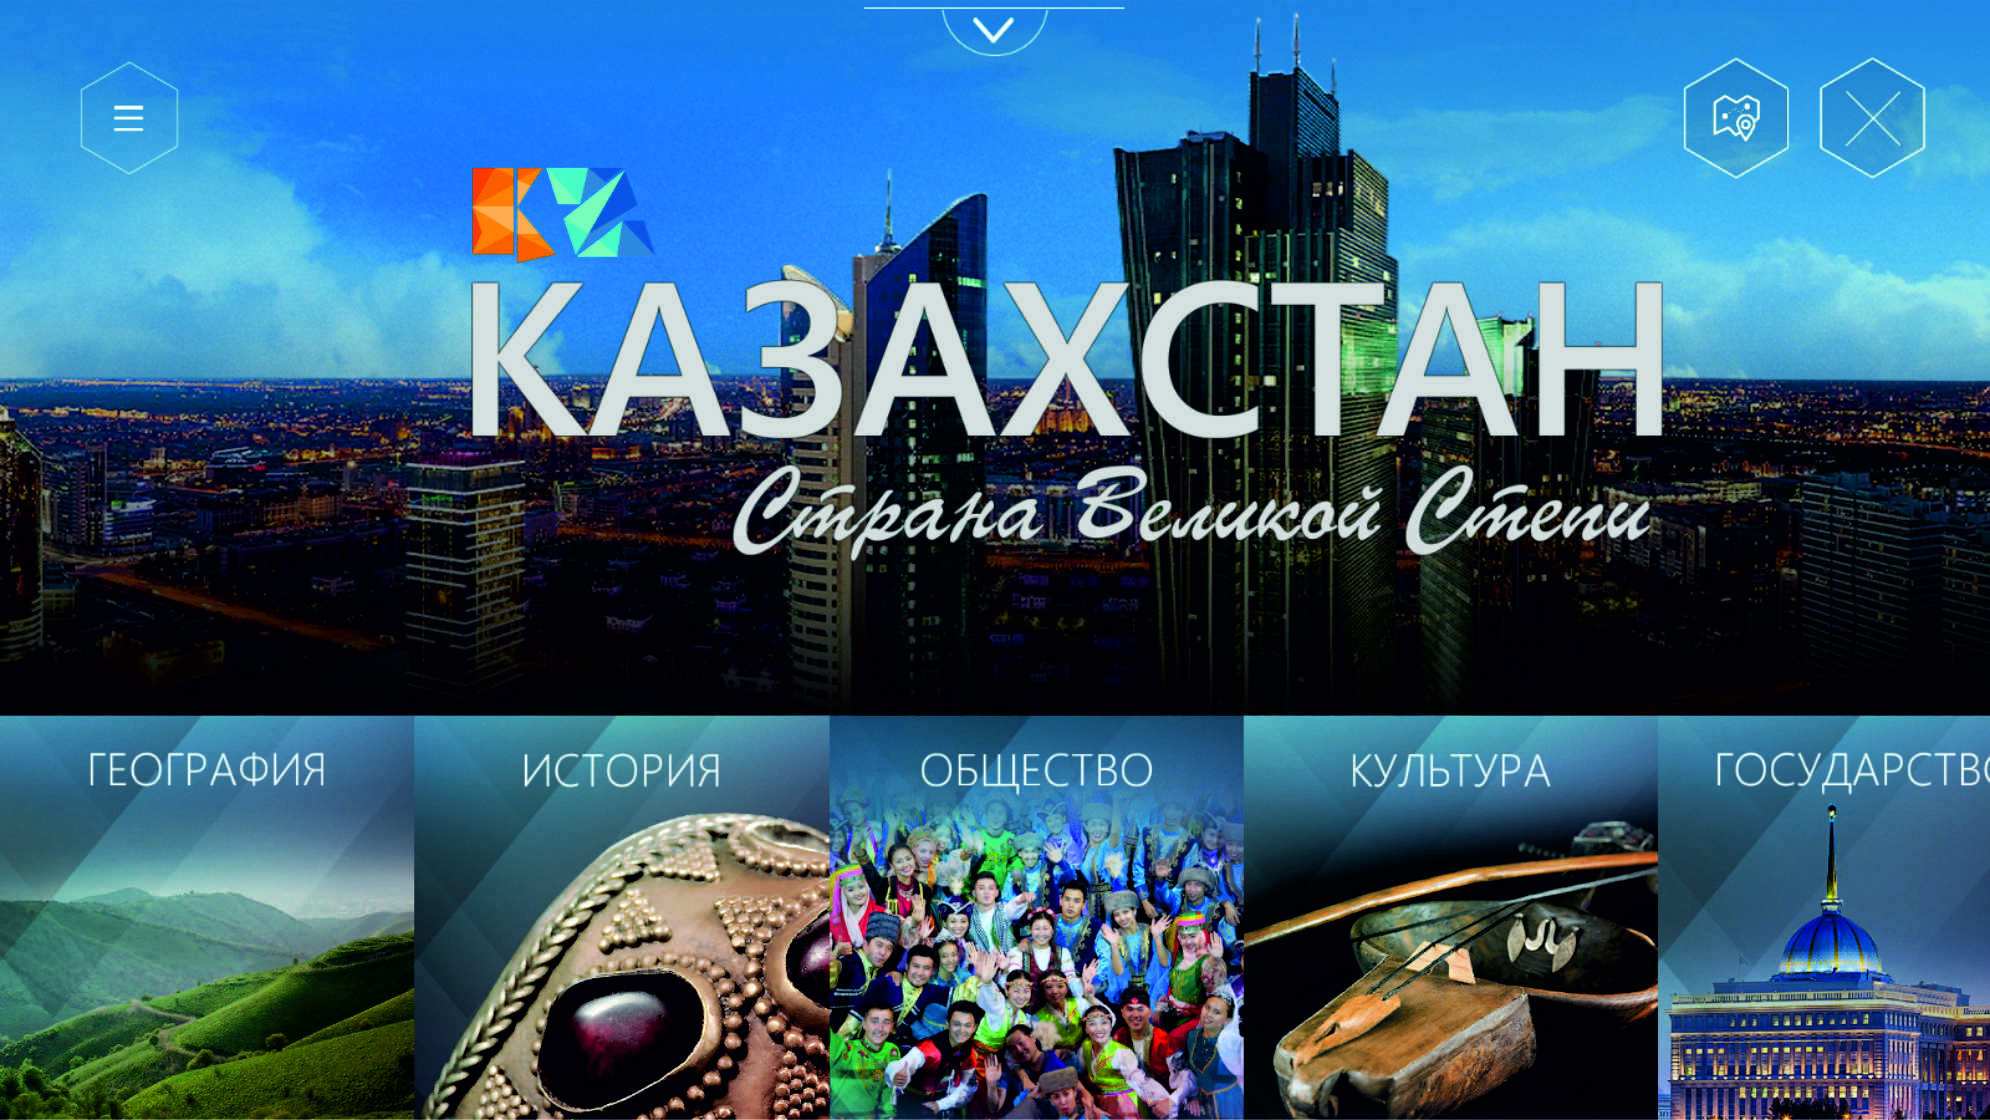 Казахстан - Страна Великой Степи